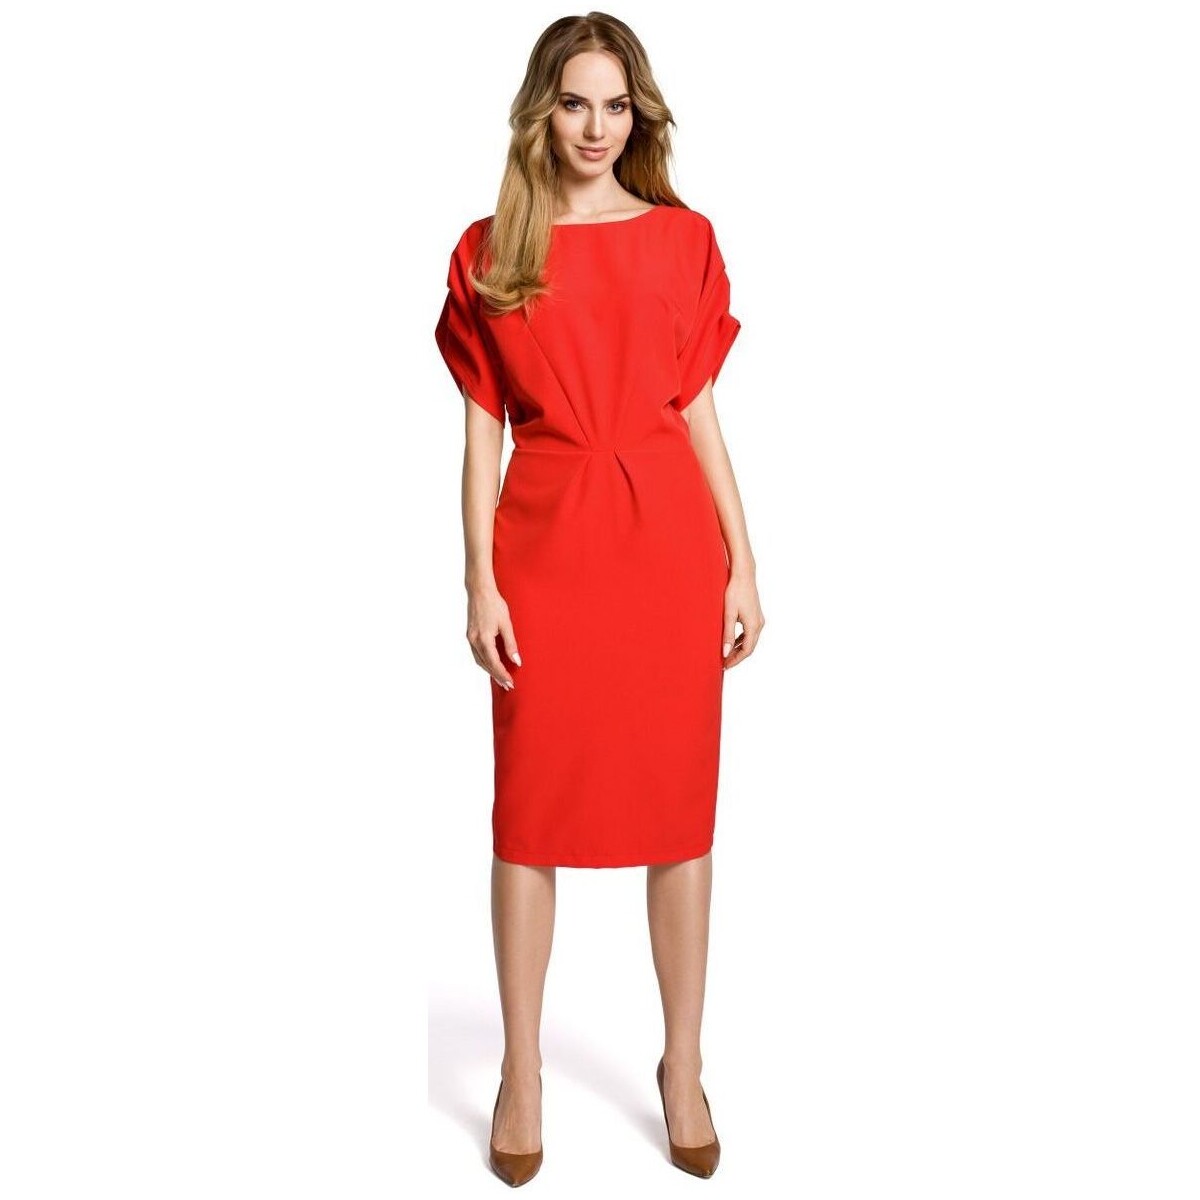 Textil Ženy Krátké šaty Made Of Emotion Dámské společenské šaty Carita M364 červená Červená